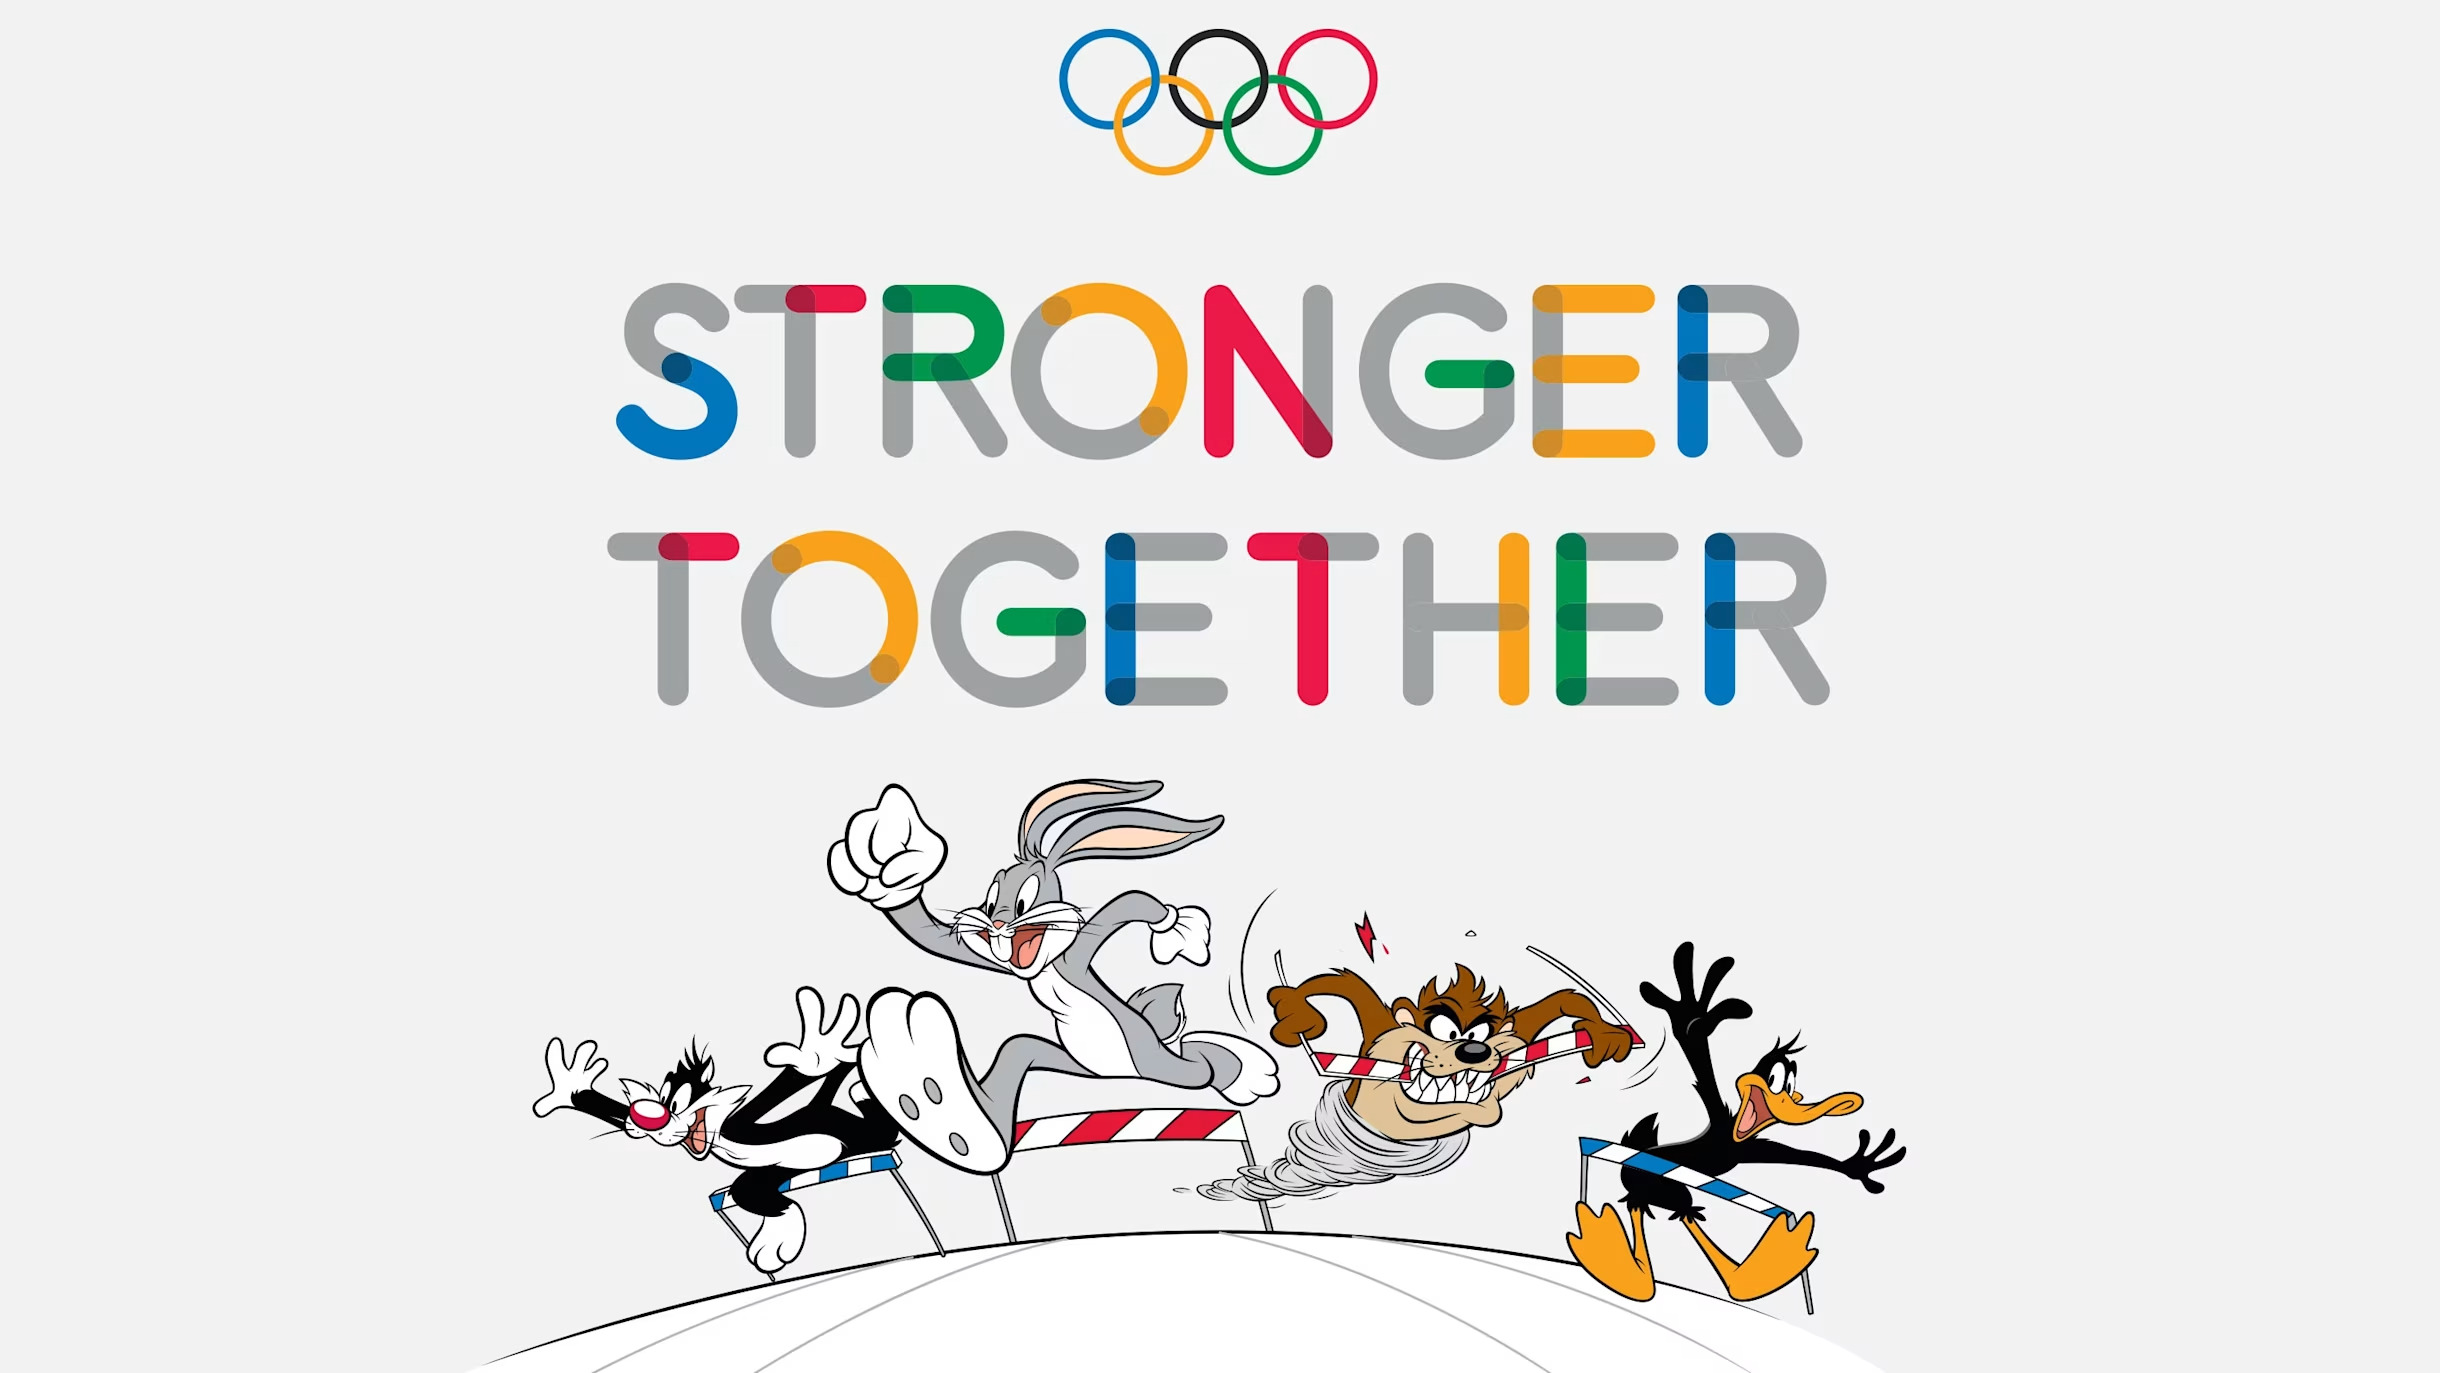 Image des Looney Tunes avec le logo olympique